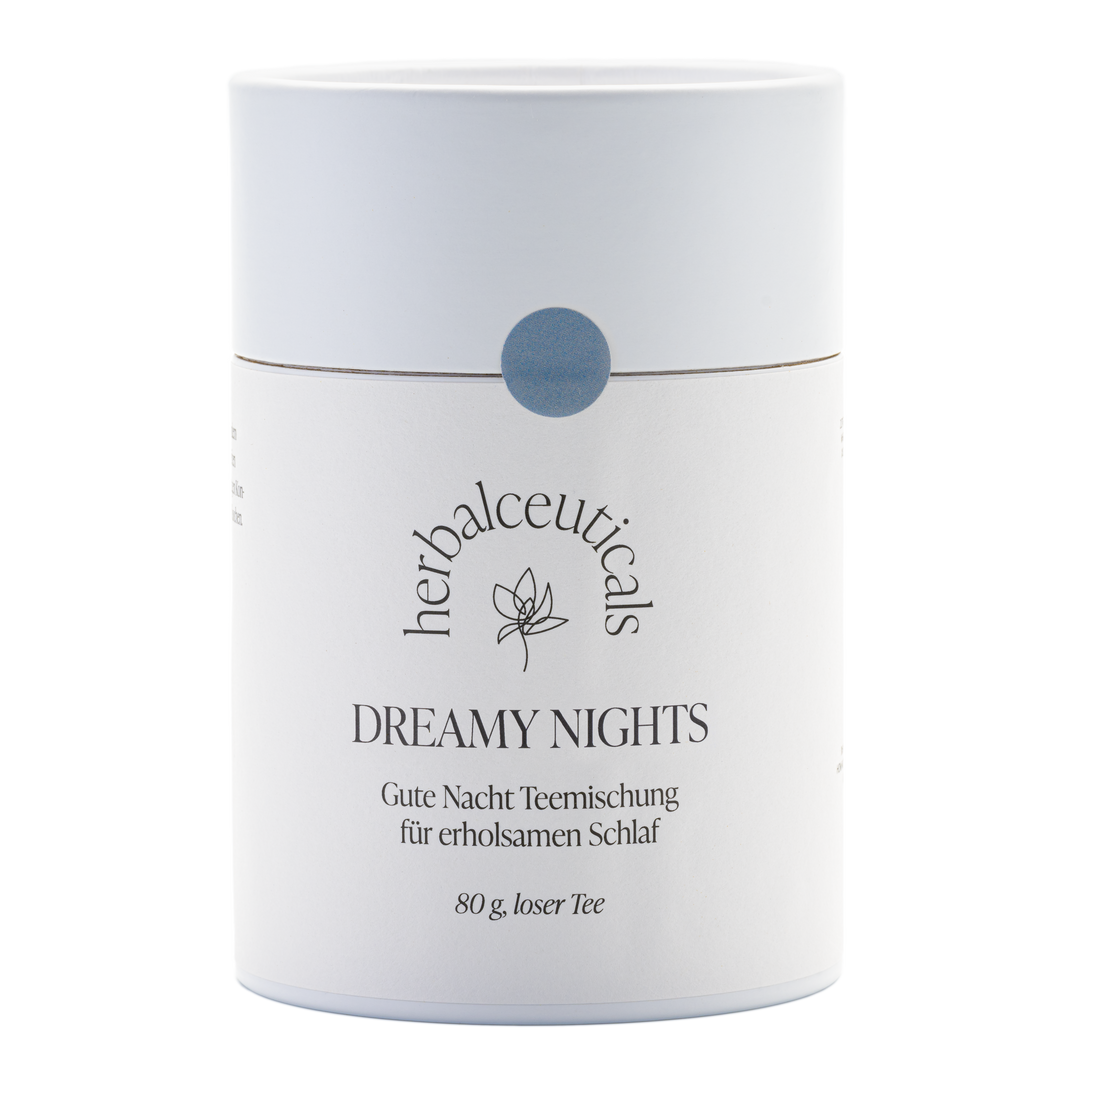 DREAMY NIGHTS - BIO Gute Nacht Teemischung